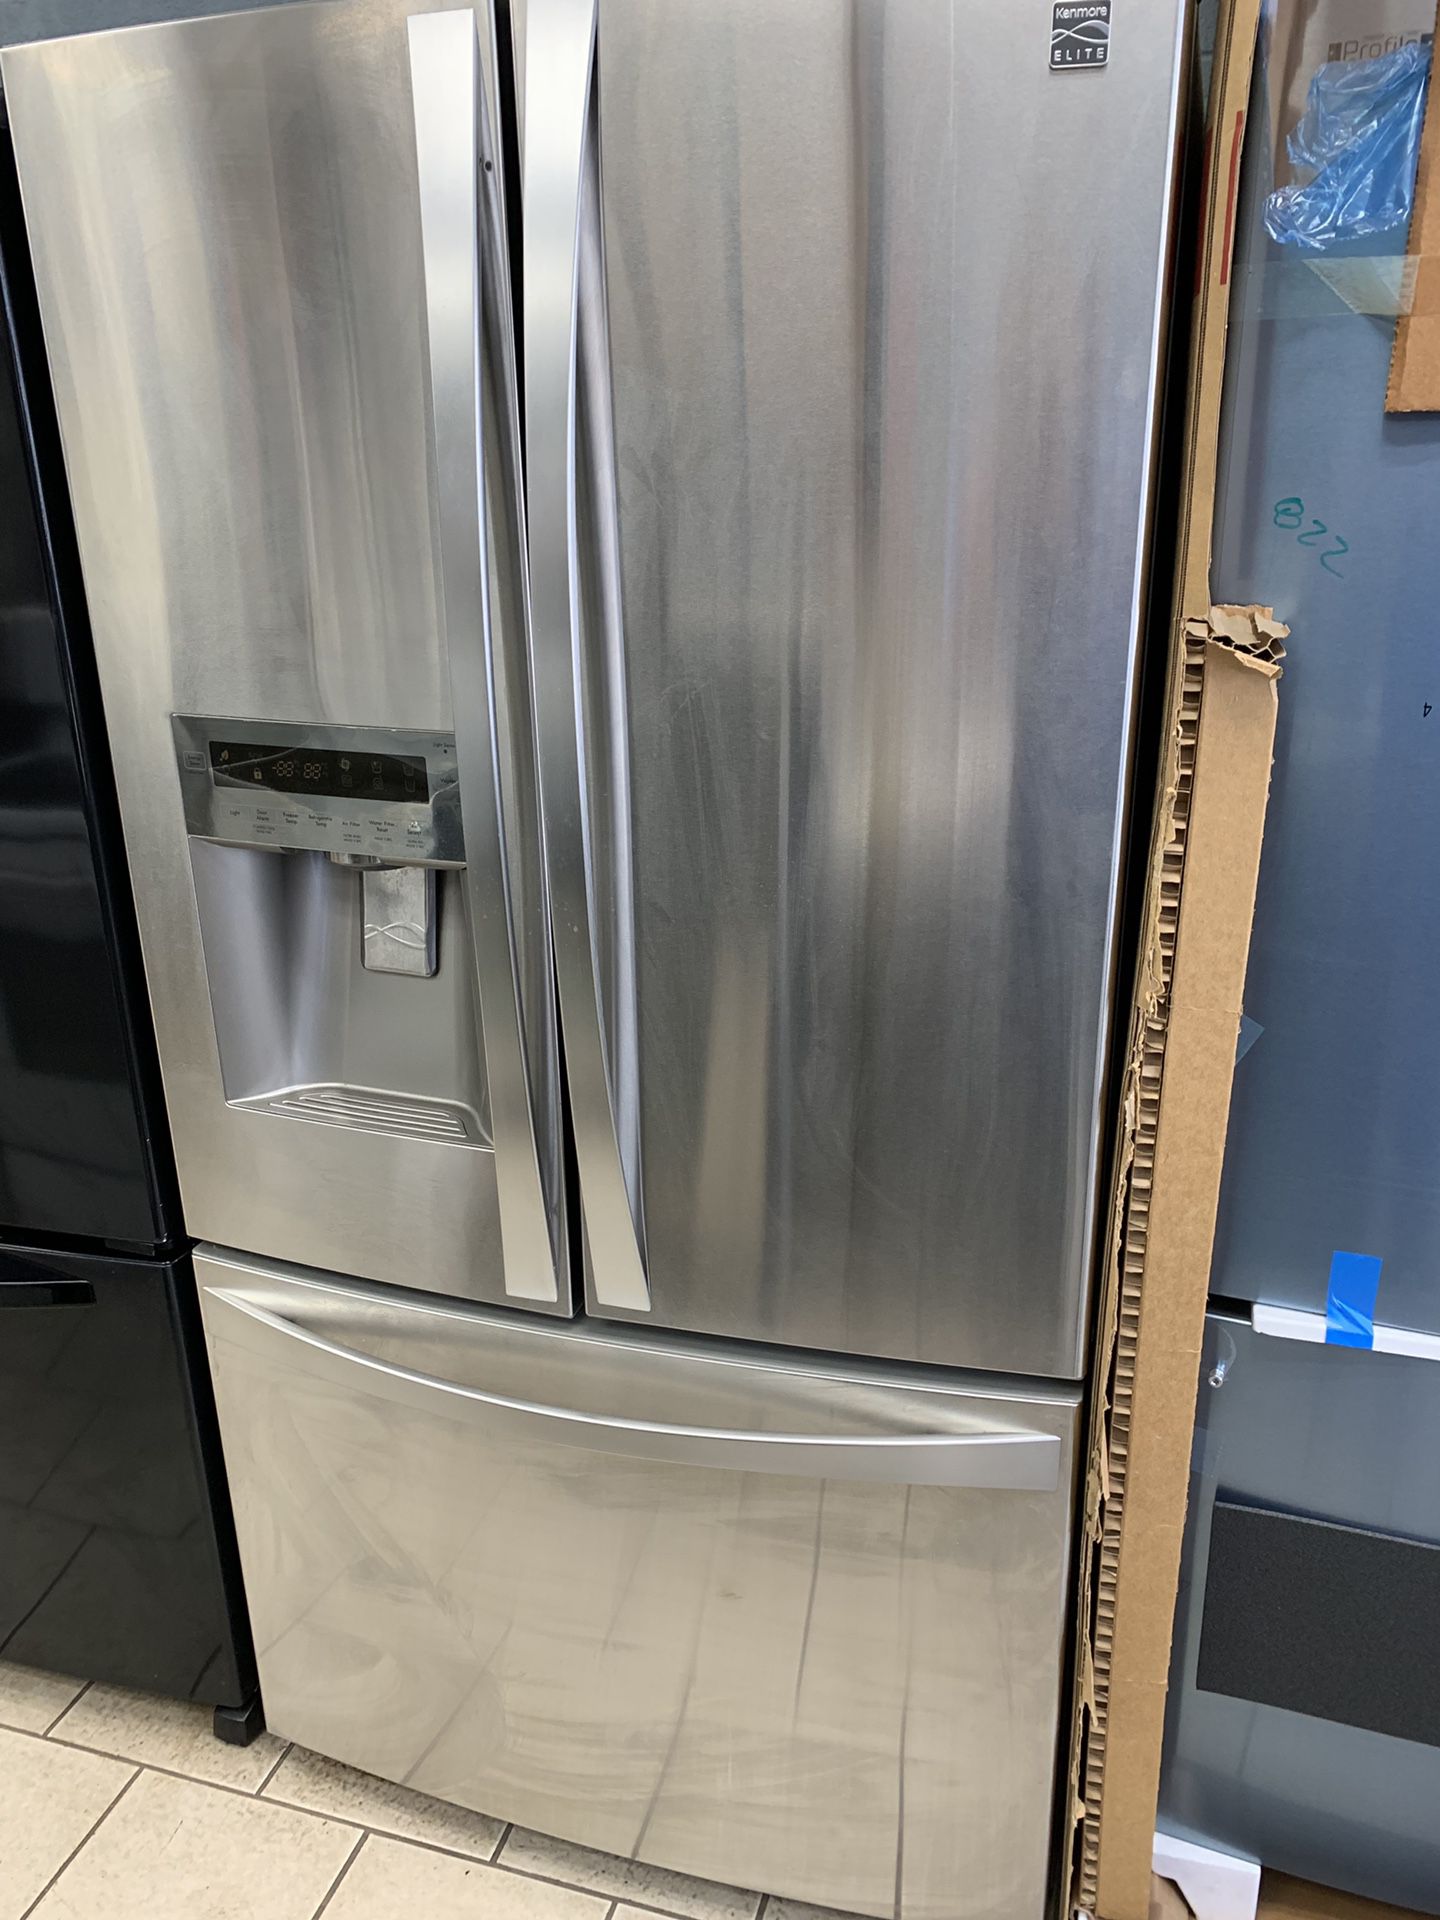 Kenmore elite french door refrigerator